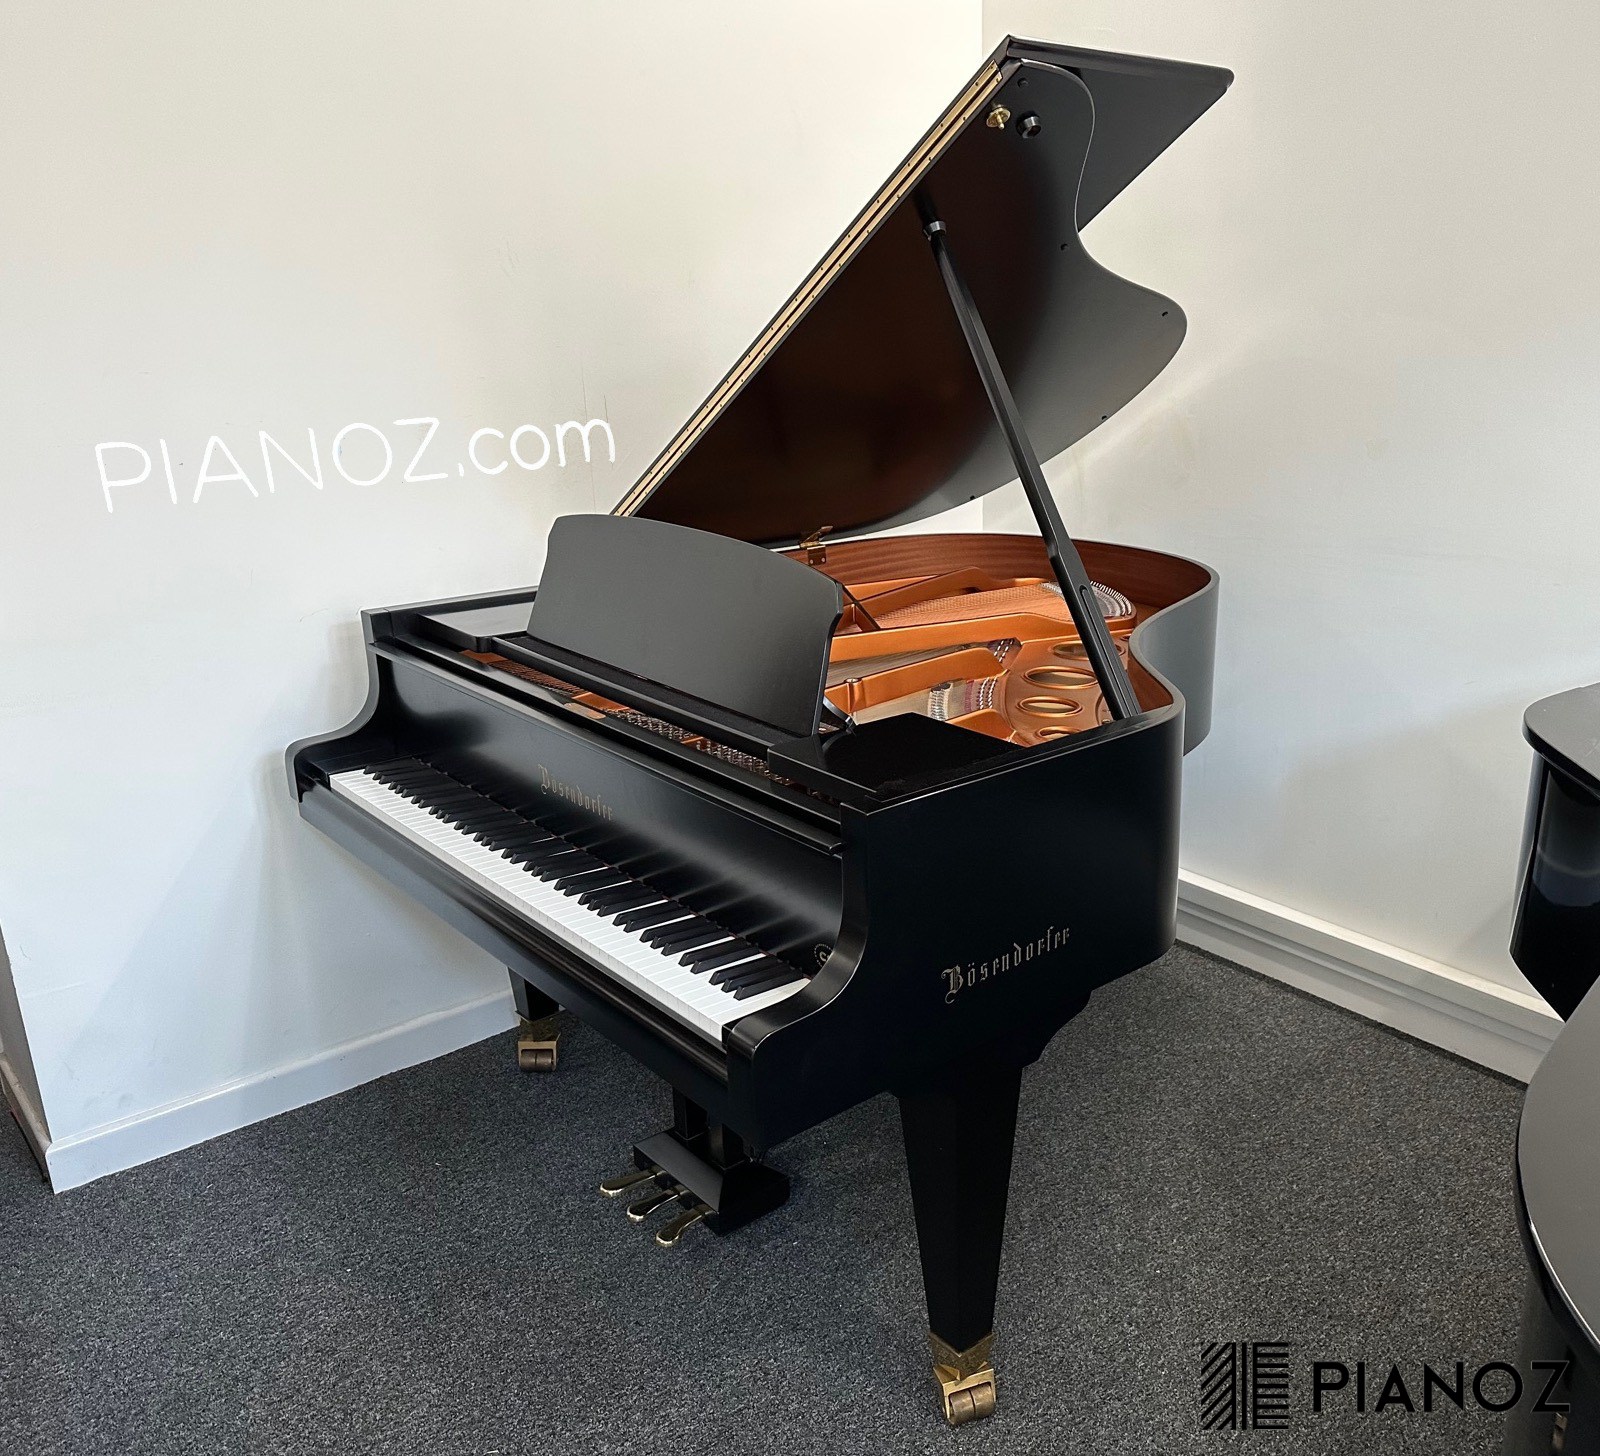 Bosendorfer 170 2001 Baby Grand Piano piano for sale in UK